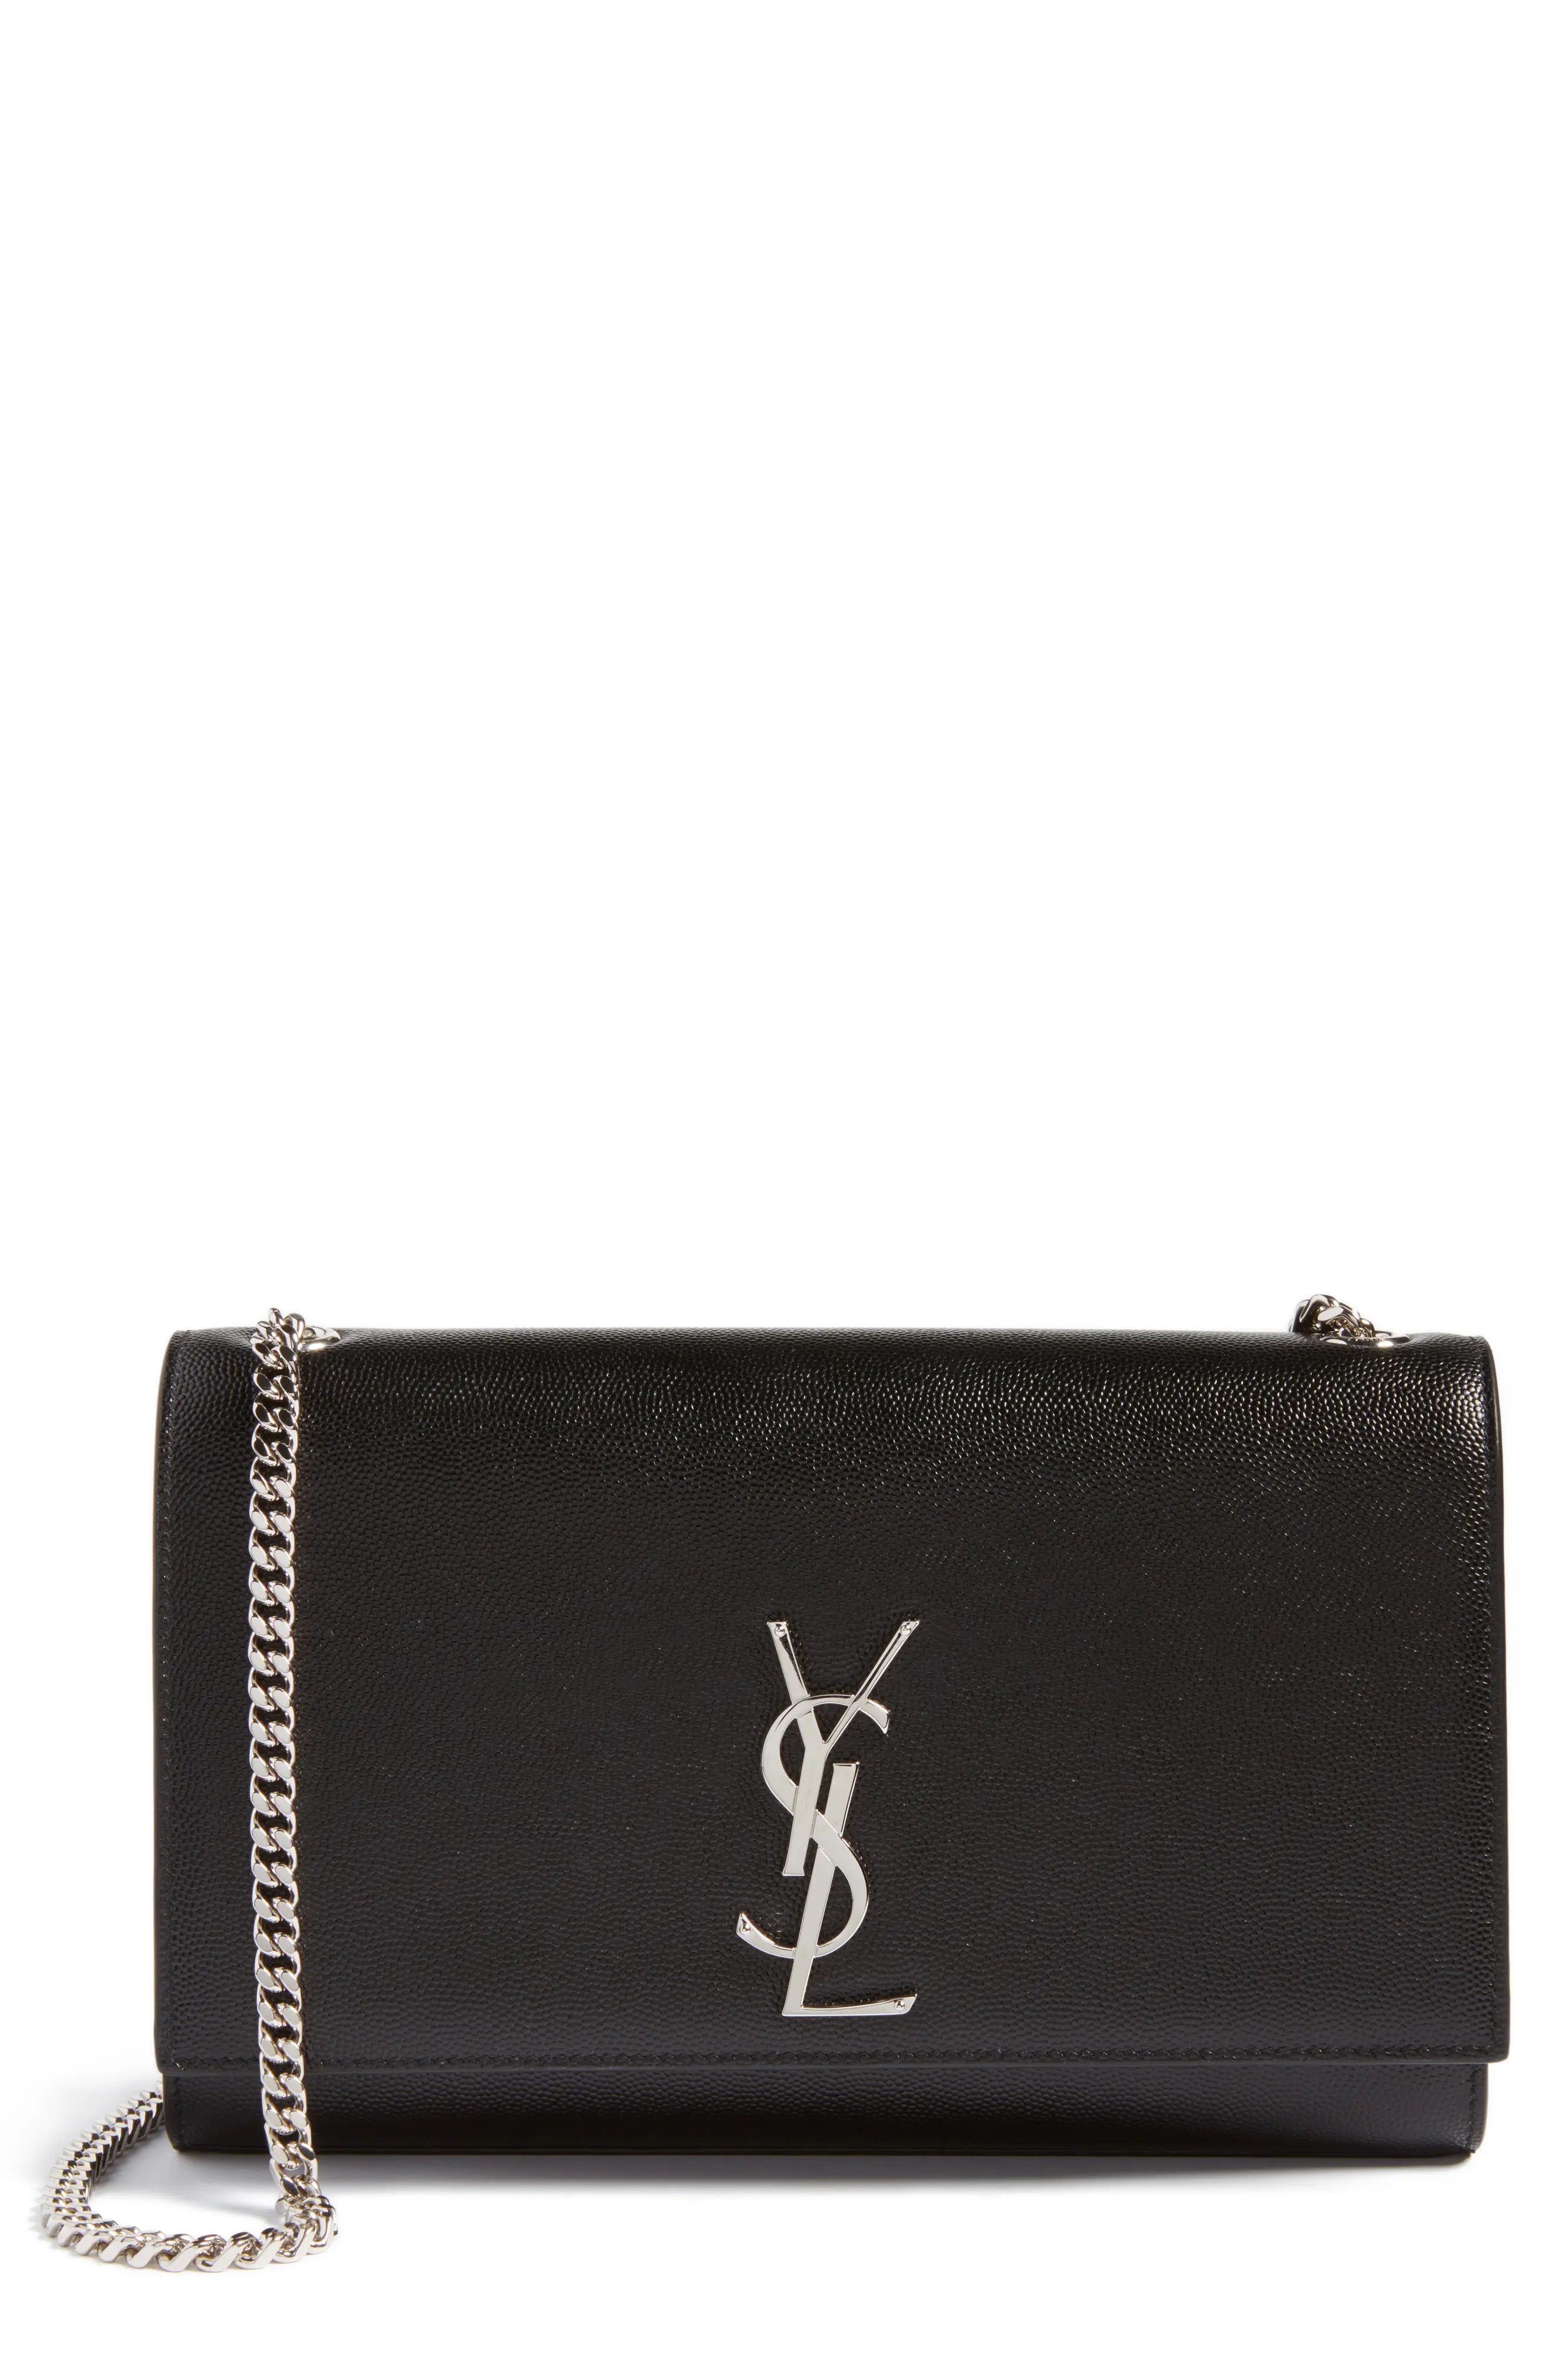 Saint Laurent Medium Kate Calfskin Leather Shoulder Bag | Nordstrom